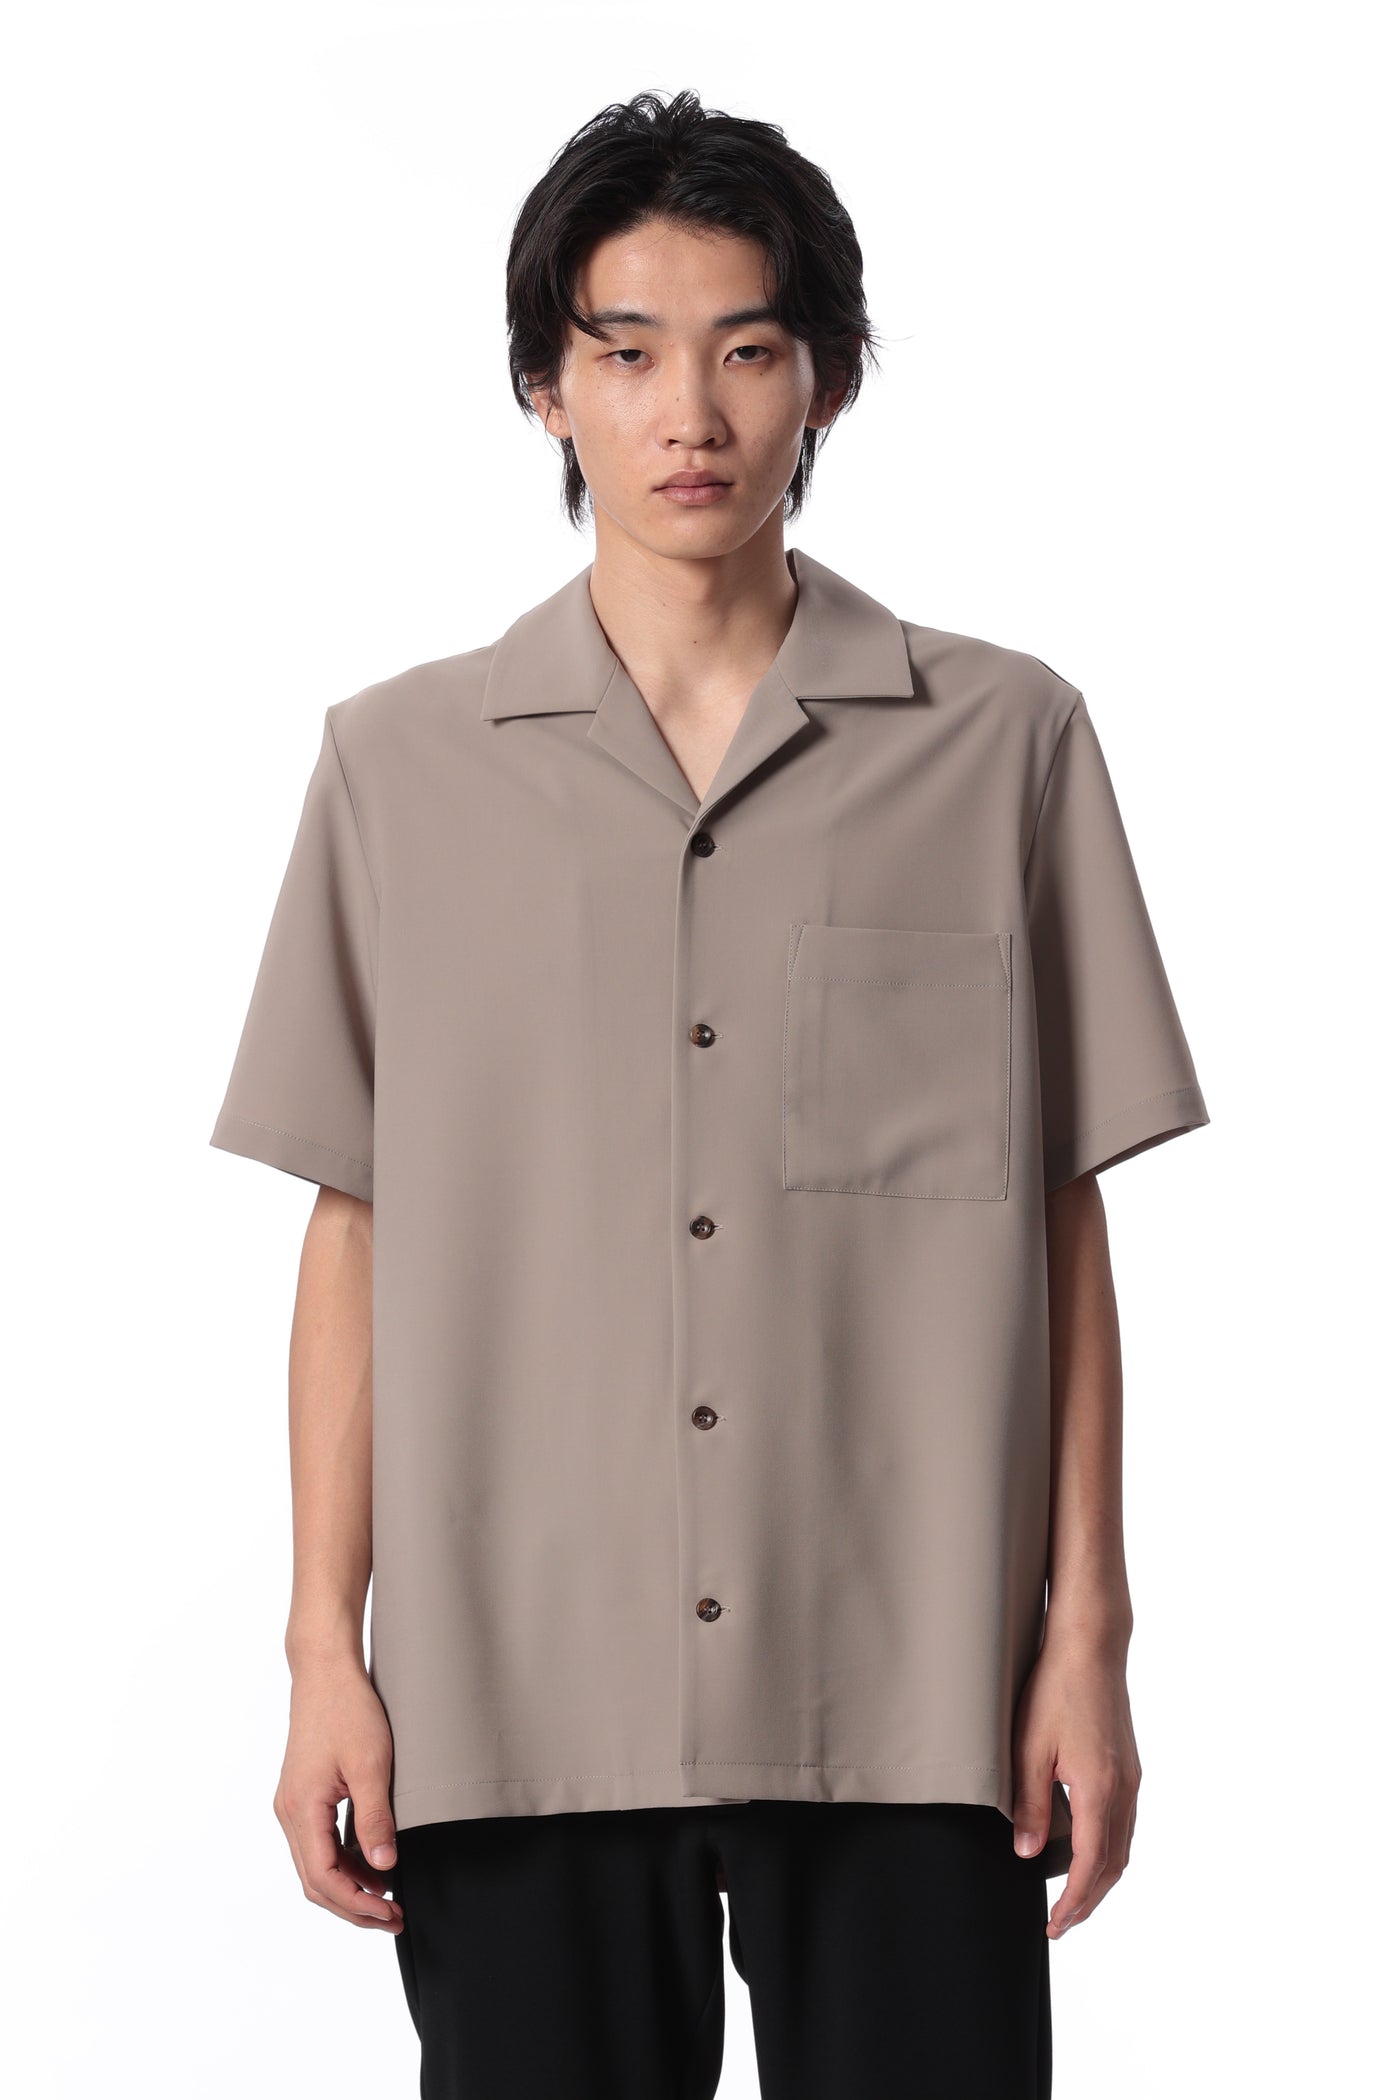 2月发售 AS41-041 涤纶紧凑斜纹修身开领衬衫 短袖